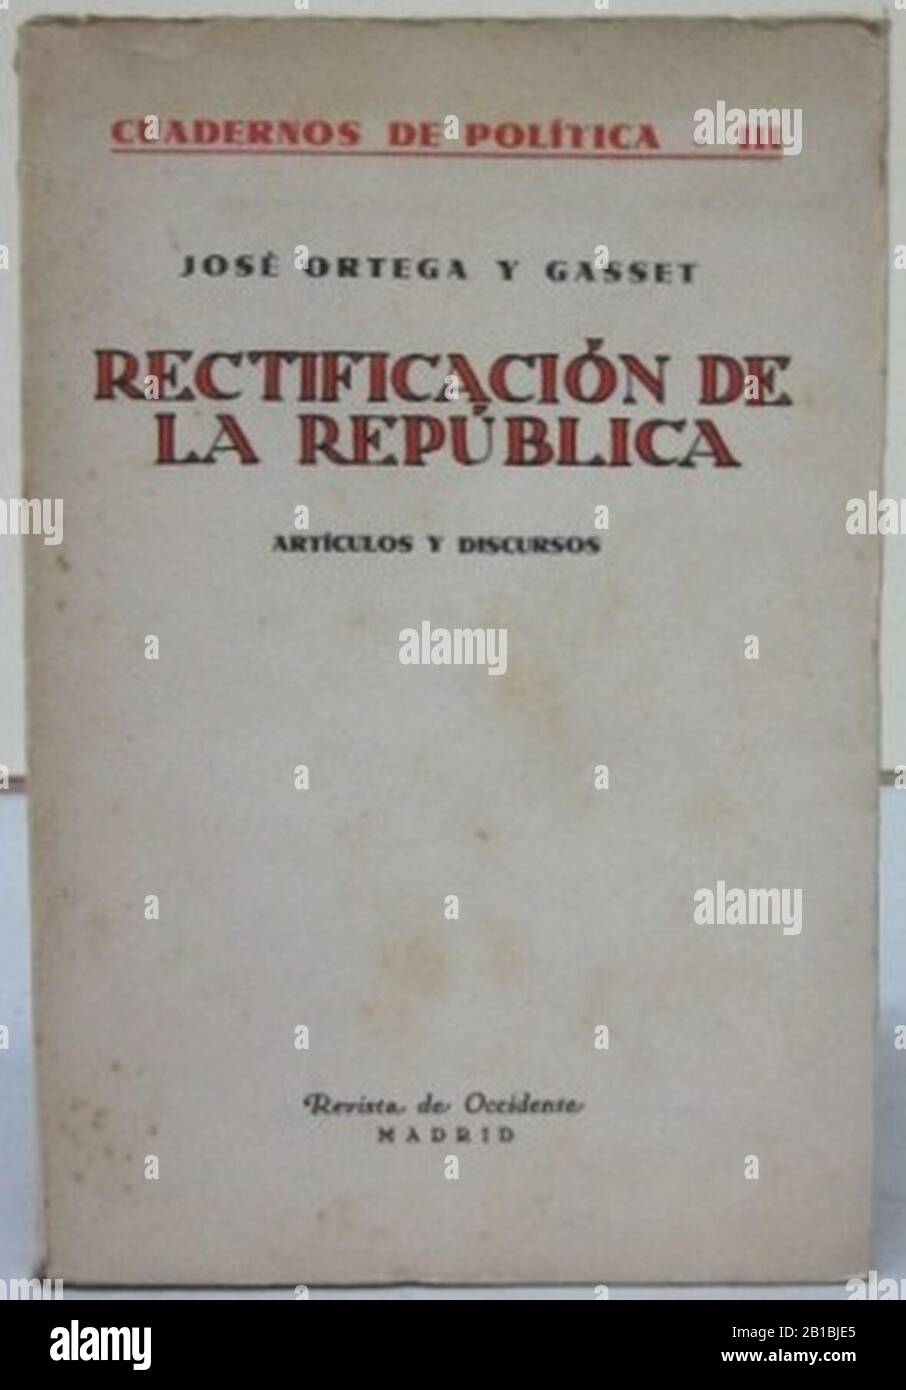 Front cover of the book ‘Rectificación de la República‘ by José Ortega y Gasset published by Revista de Occidente in 1932. Stock Photo